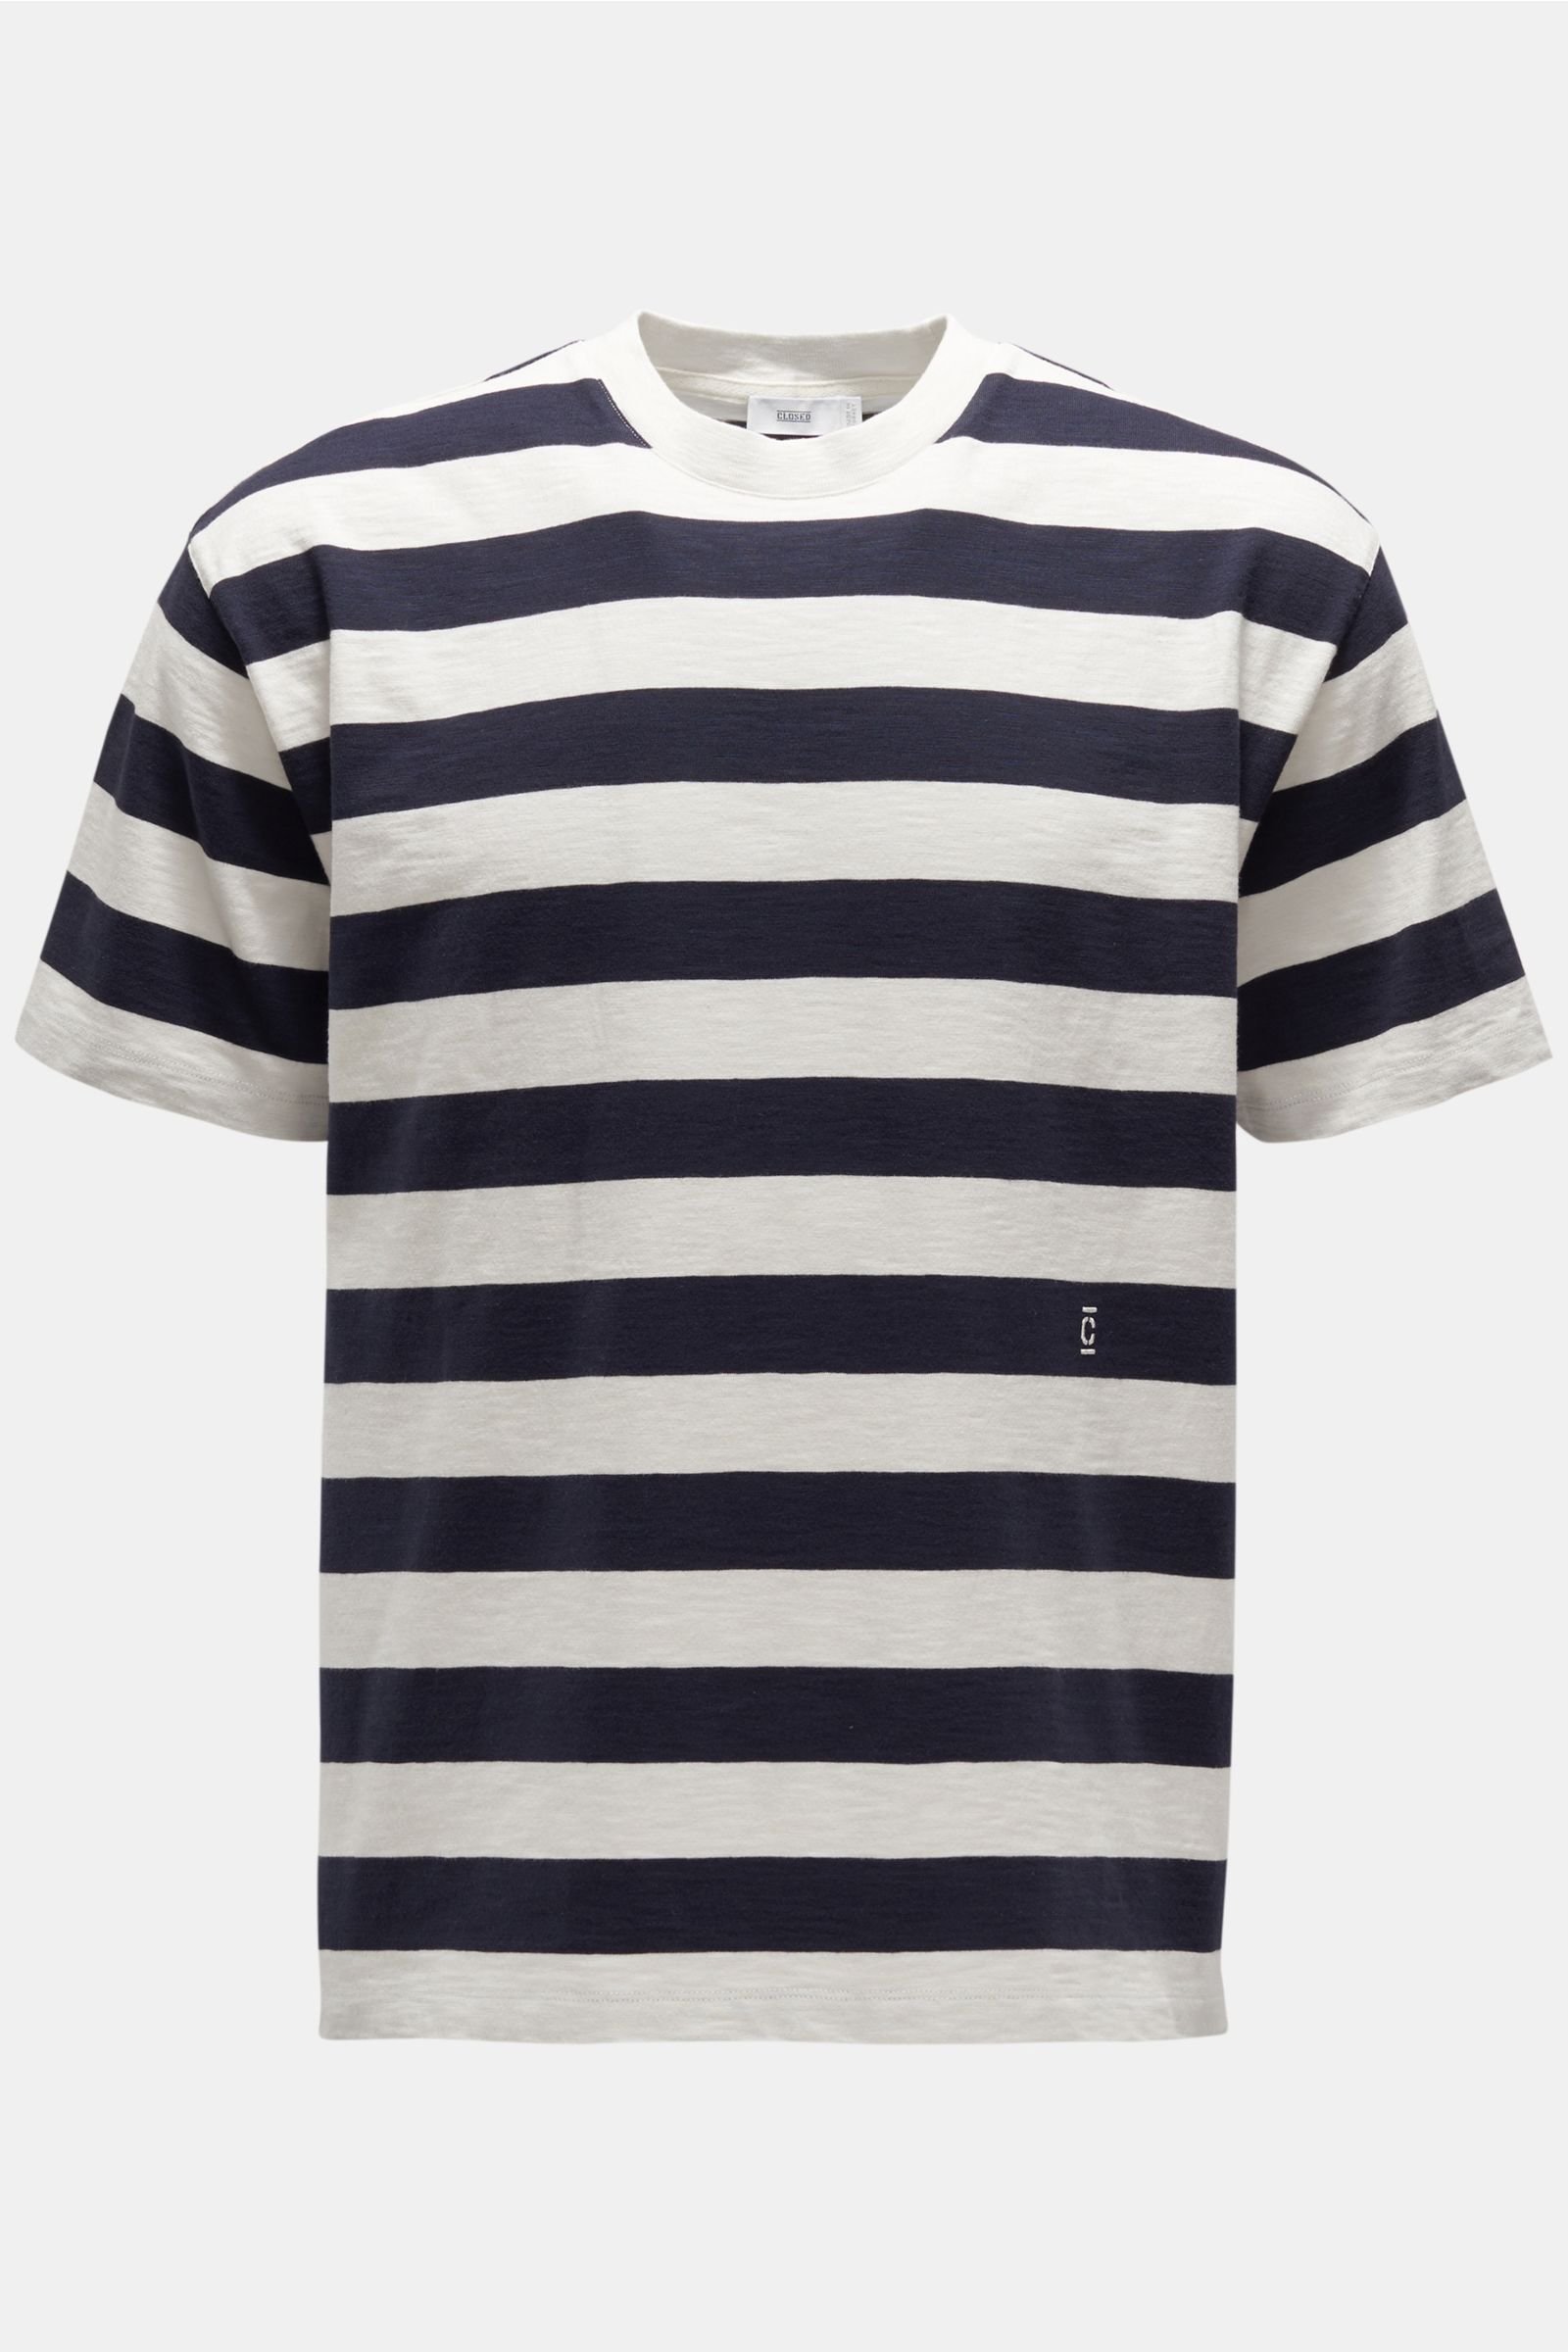 Crew neck T-shirt dark navy/off-white striped